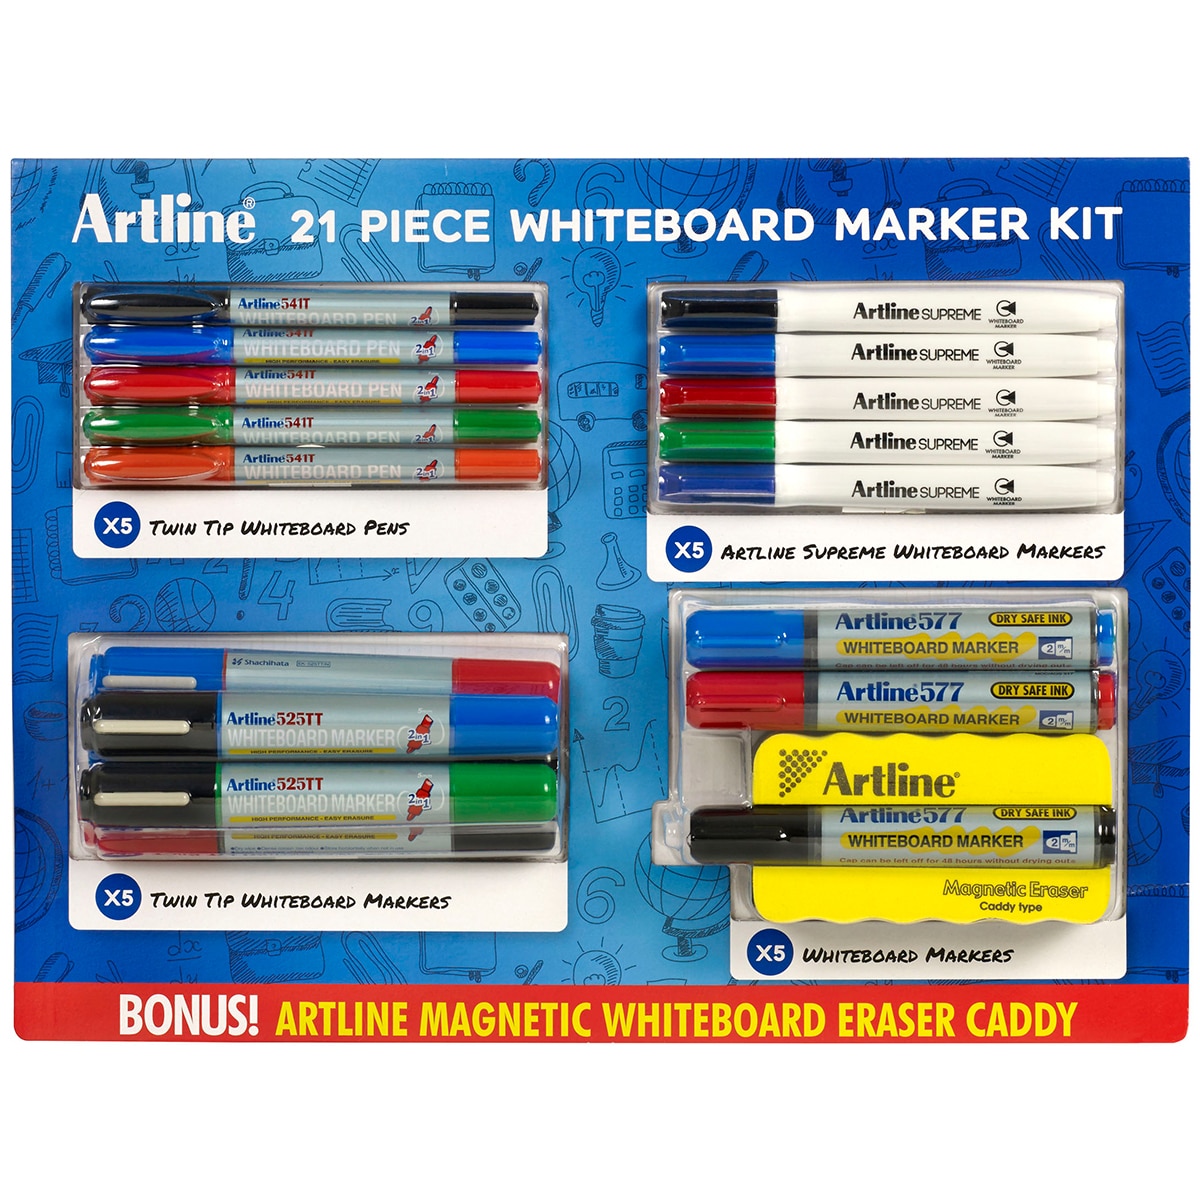 Artline Whiteboard Marker Kit